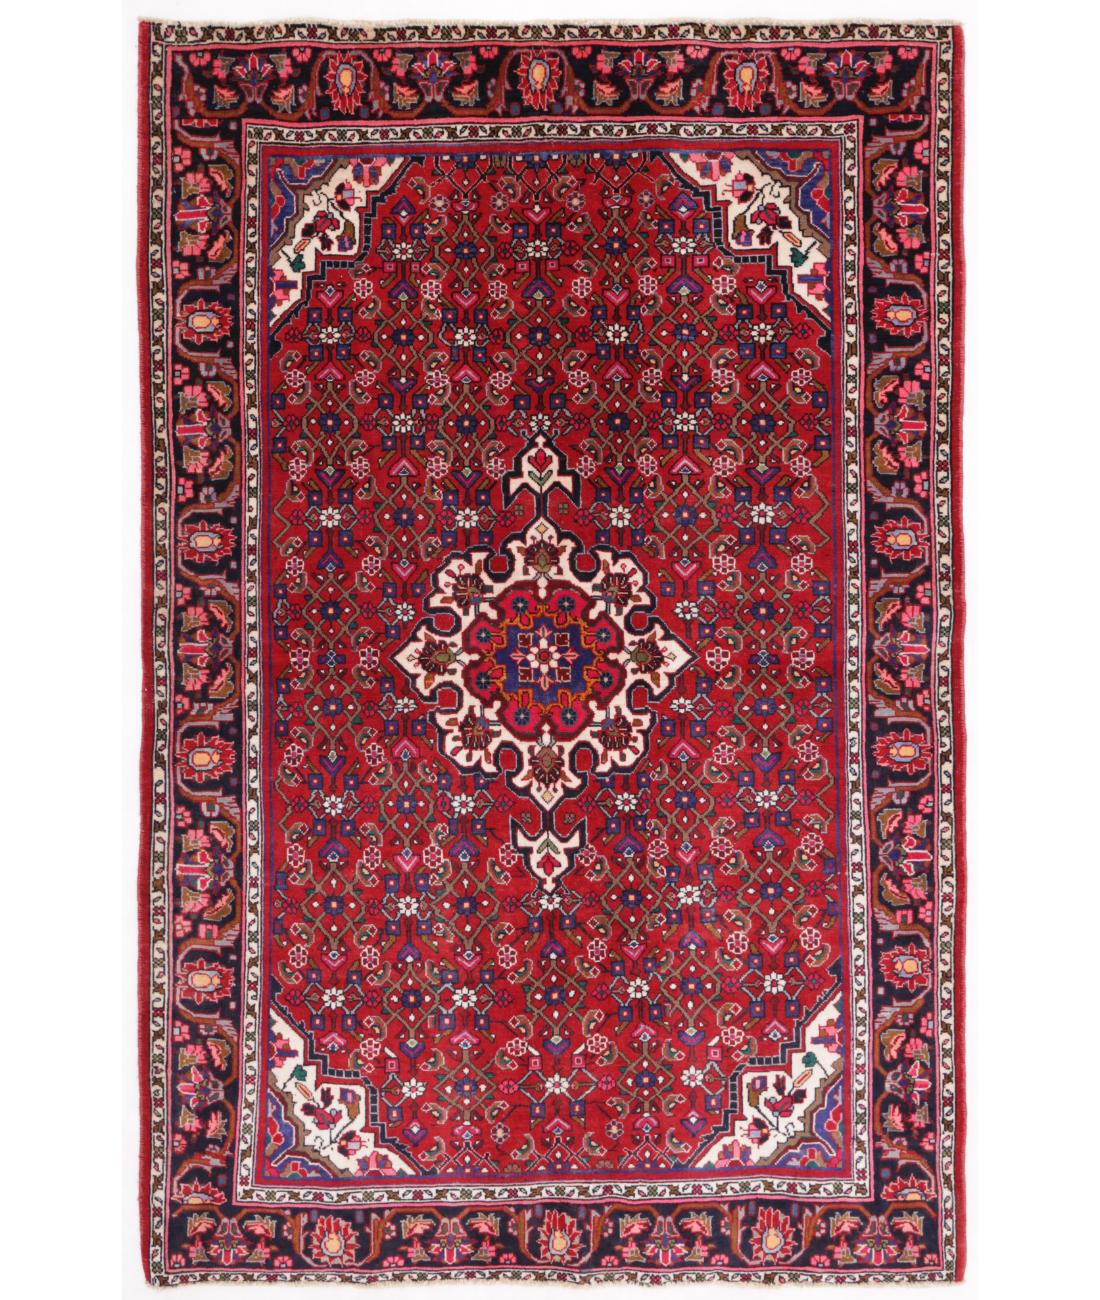 Hand Knotted Persian Bijar Wool Rug - 4'3'' x 6'4'' 4' 3" X 6' 4" ( 130 X 193 ) / Red / Black